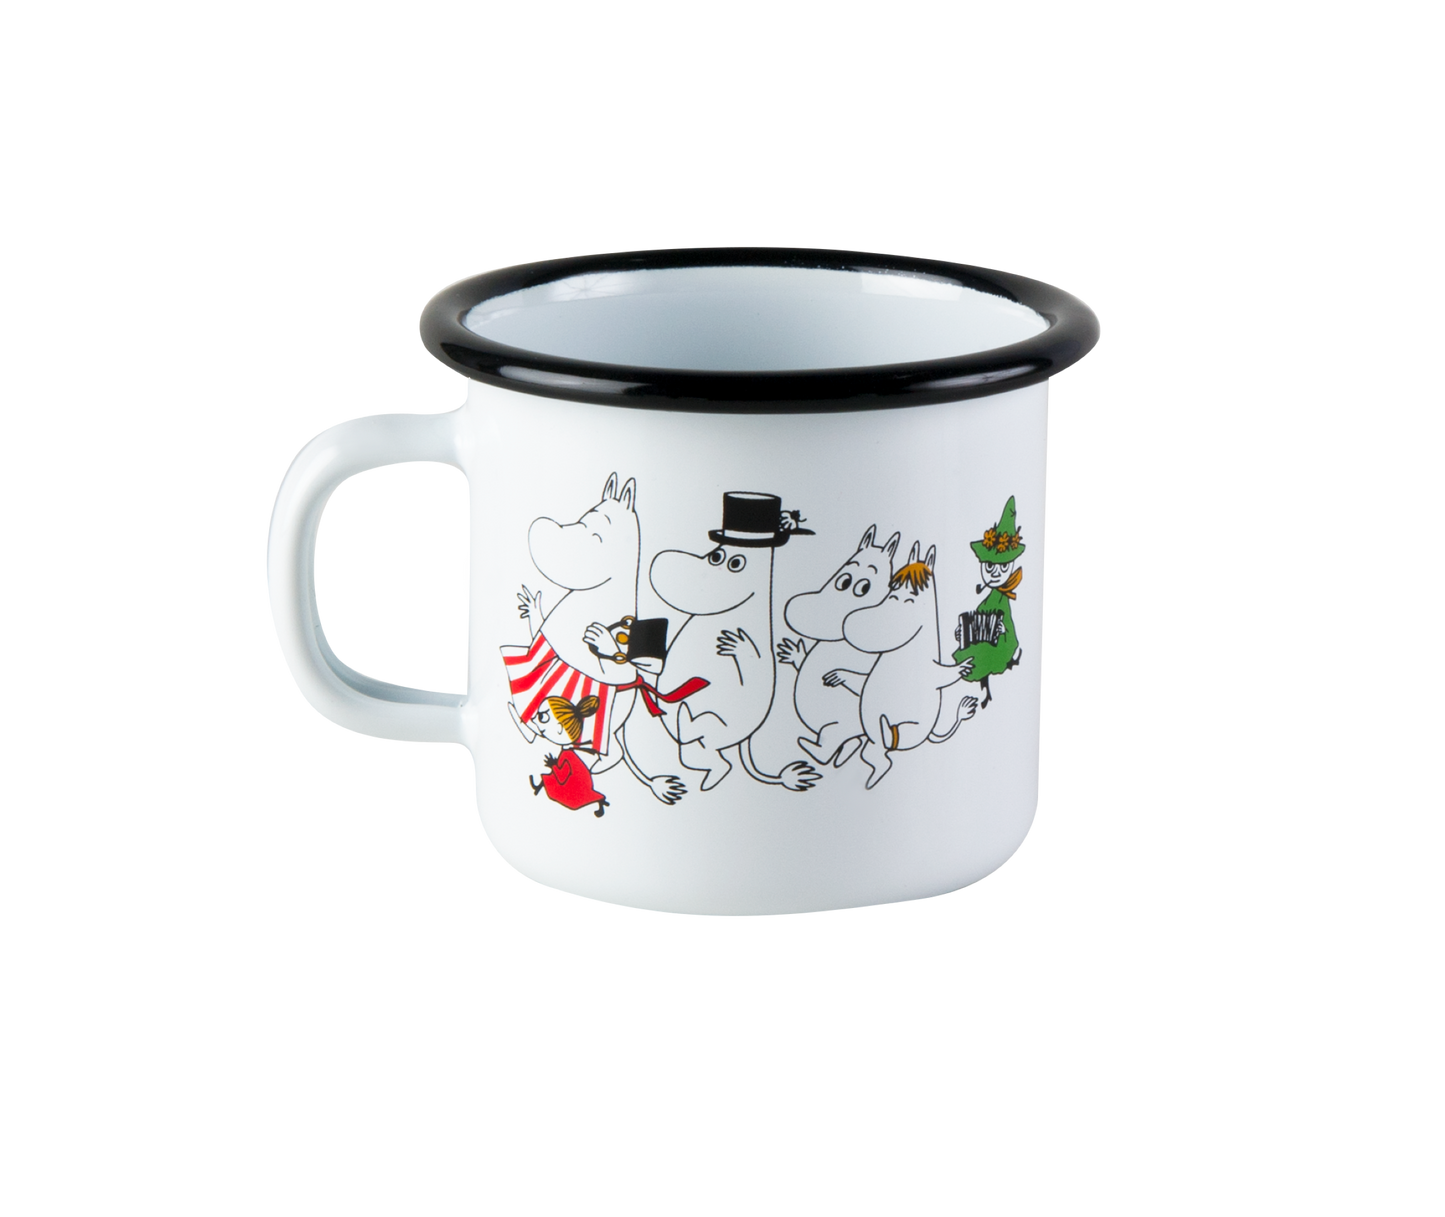 Moomin "Colours" Enamel Mug